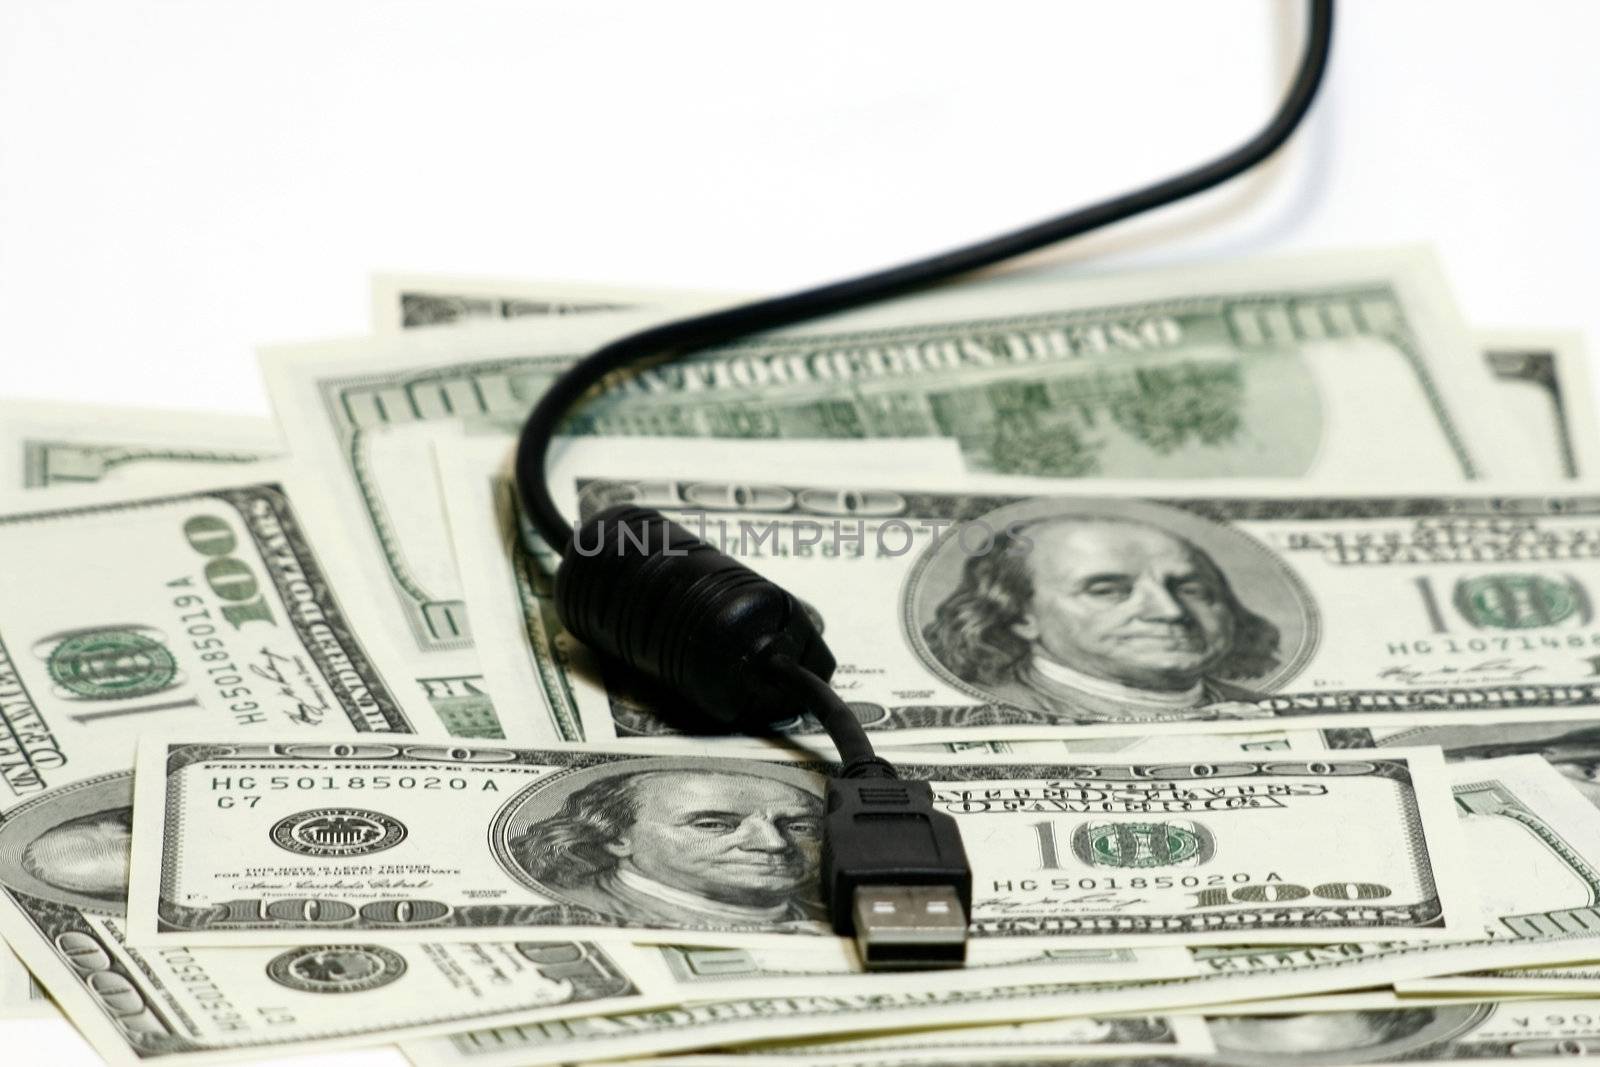 USB on Dollar bill concept by sacatani